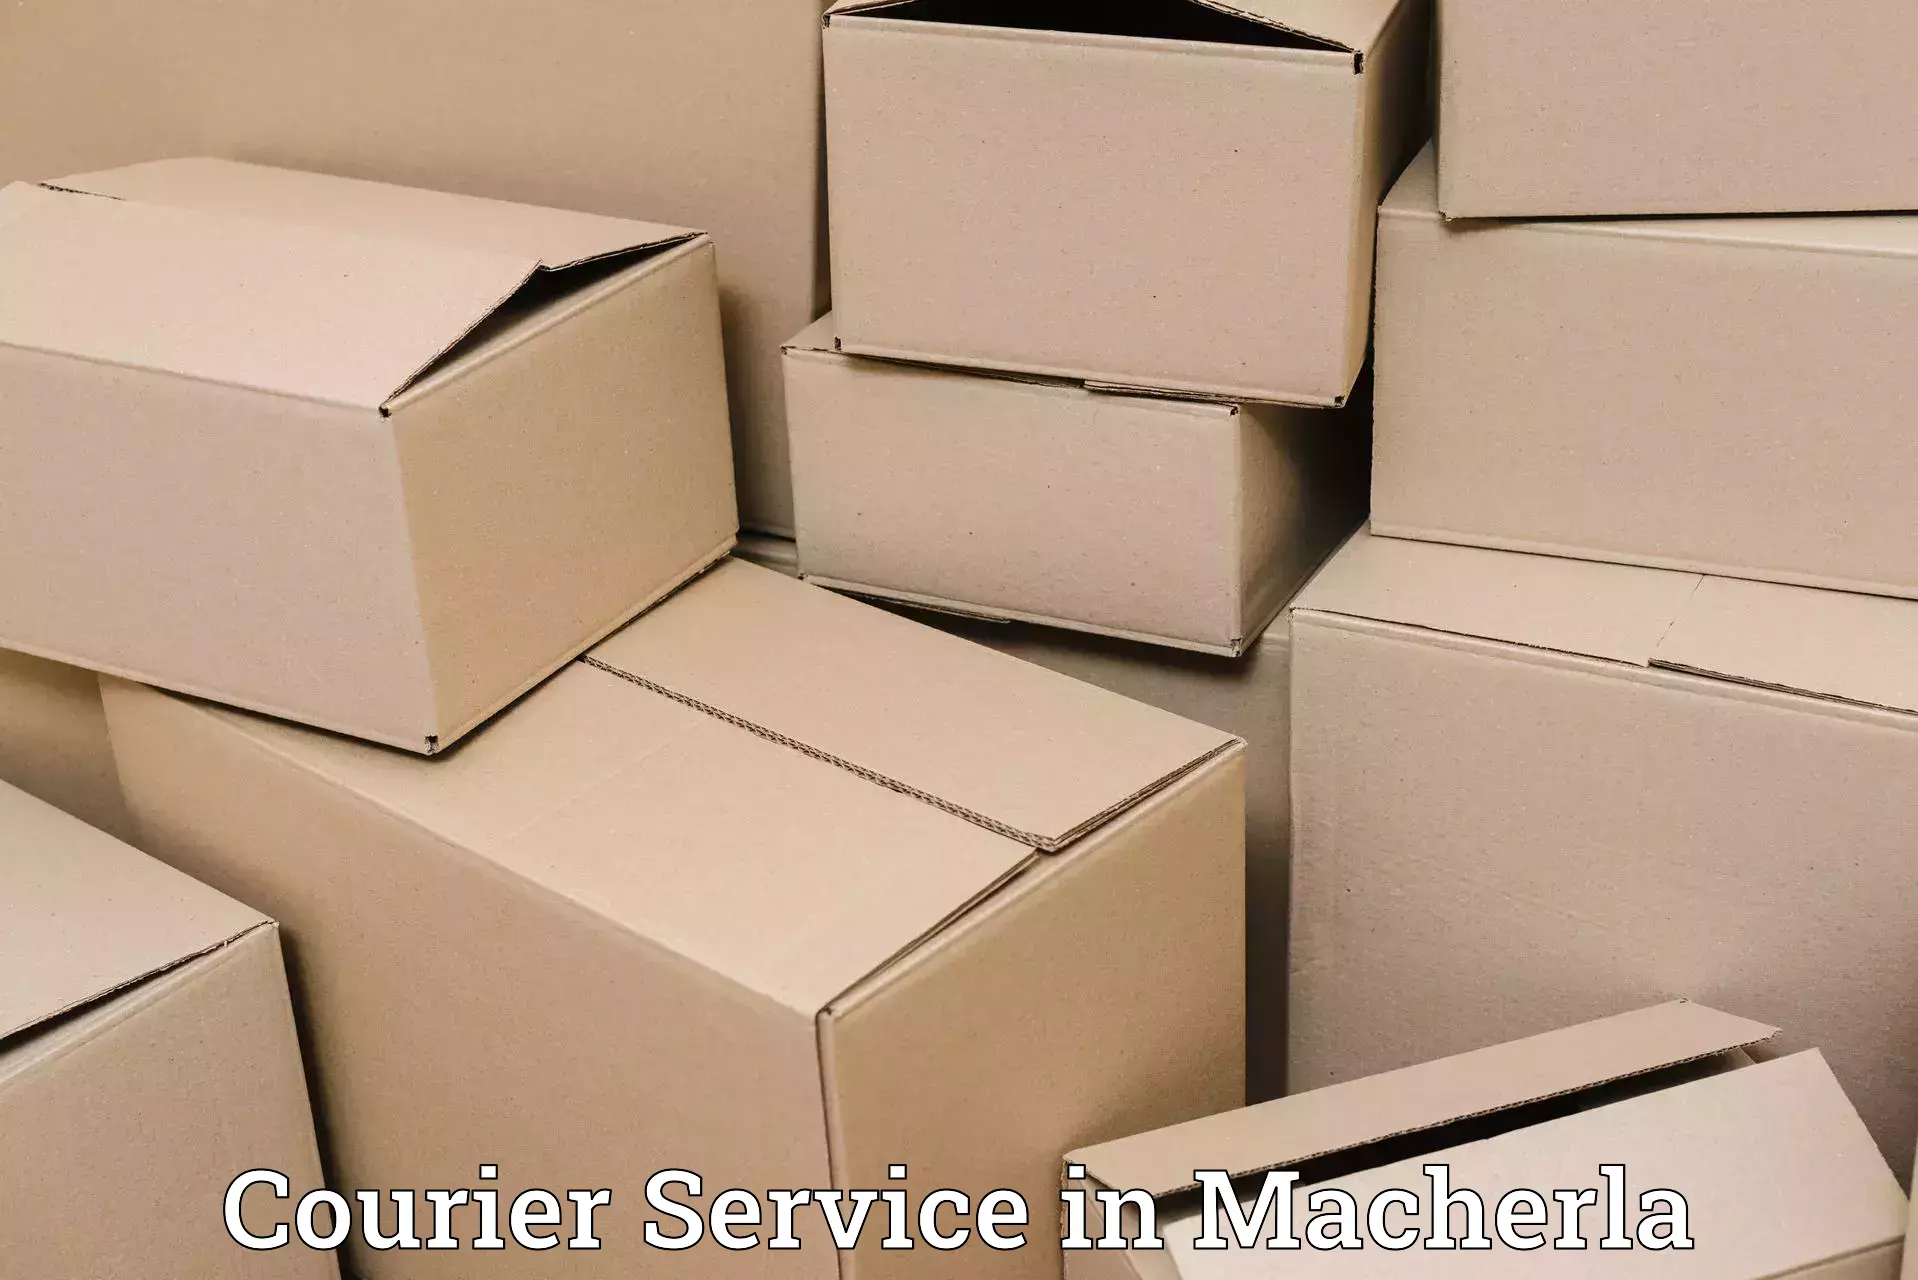 Urgent courier needs in Macherla